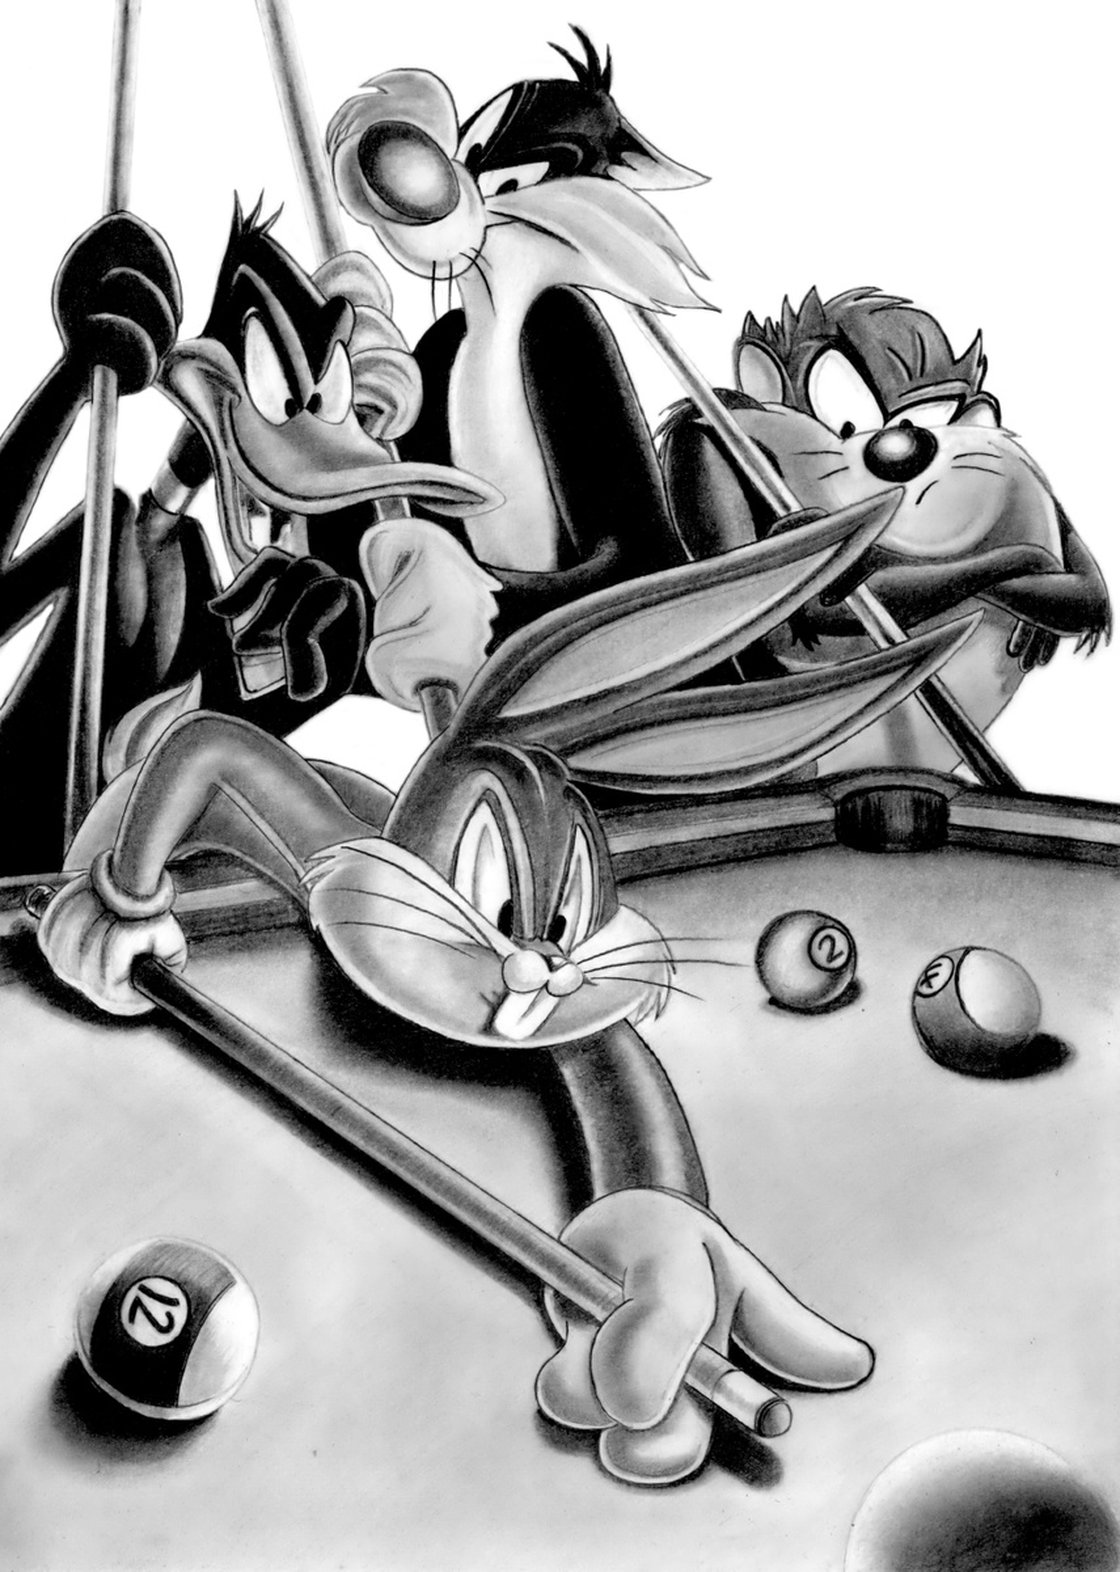 Looney Tunes #2 Pencil drawing by Paul Stowe | Artfinder